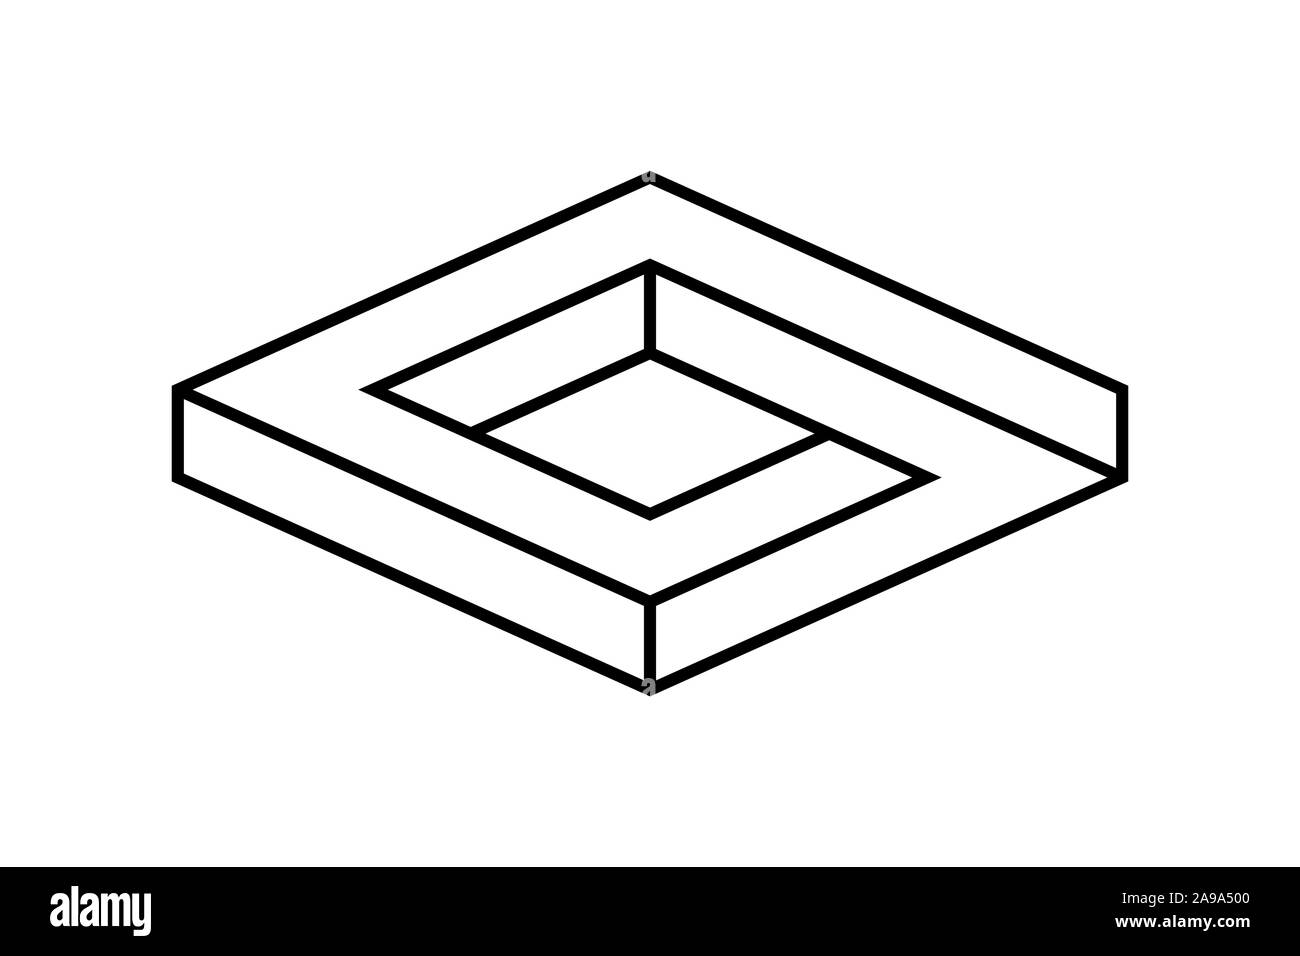 Impossibile forma scatolare. Illusione ottica. Infinito lineare rhombus figura. Abstract eterna oggetto geometrico. Impossibile senza fine contorno rettangolare.vettore Illustrazione Vettoriale